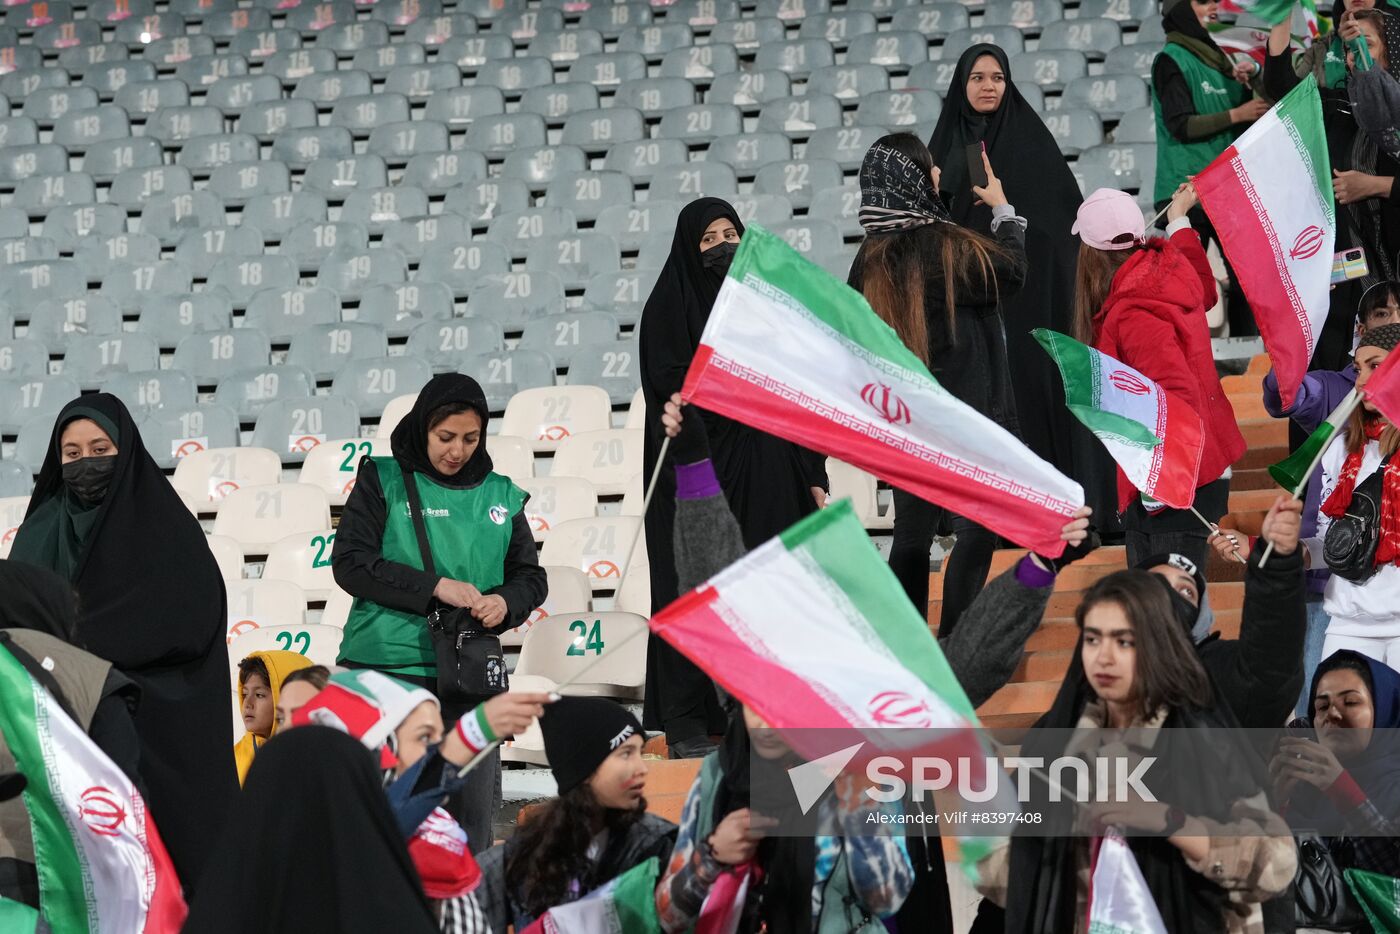 Russia Soccer Friendly Iran - Russia